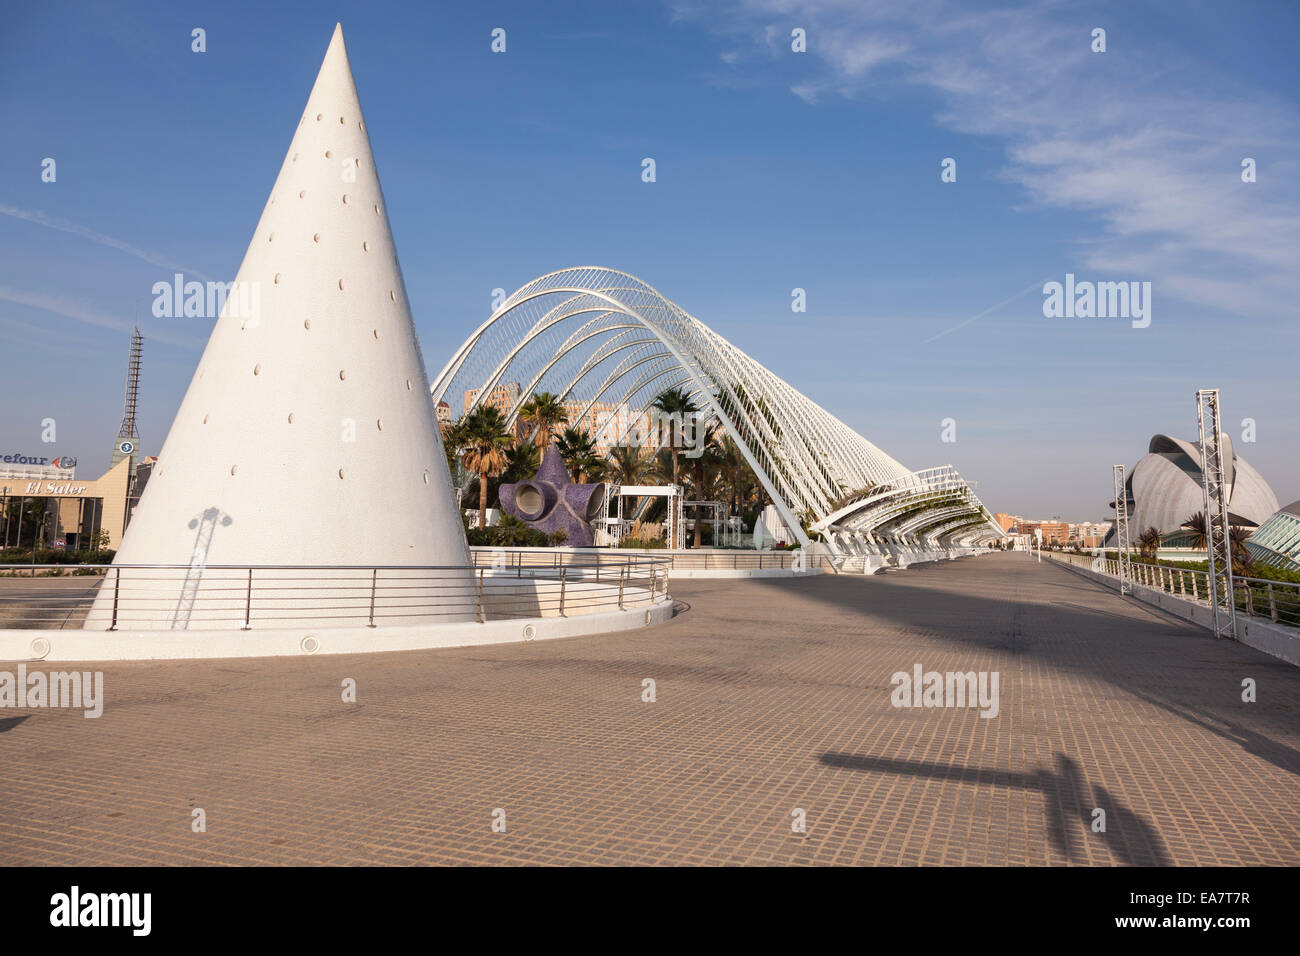 The Umbracle in the ciudad de las artes y las ciencias, Valencia, Spain. Stock Photo